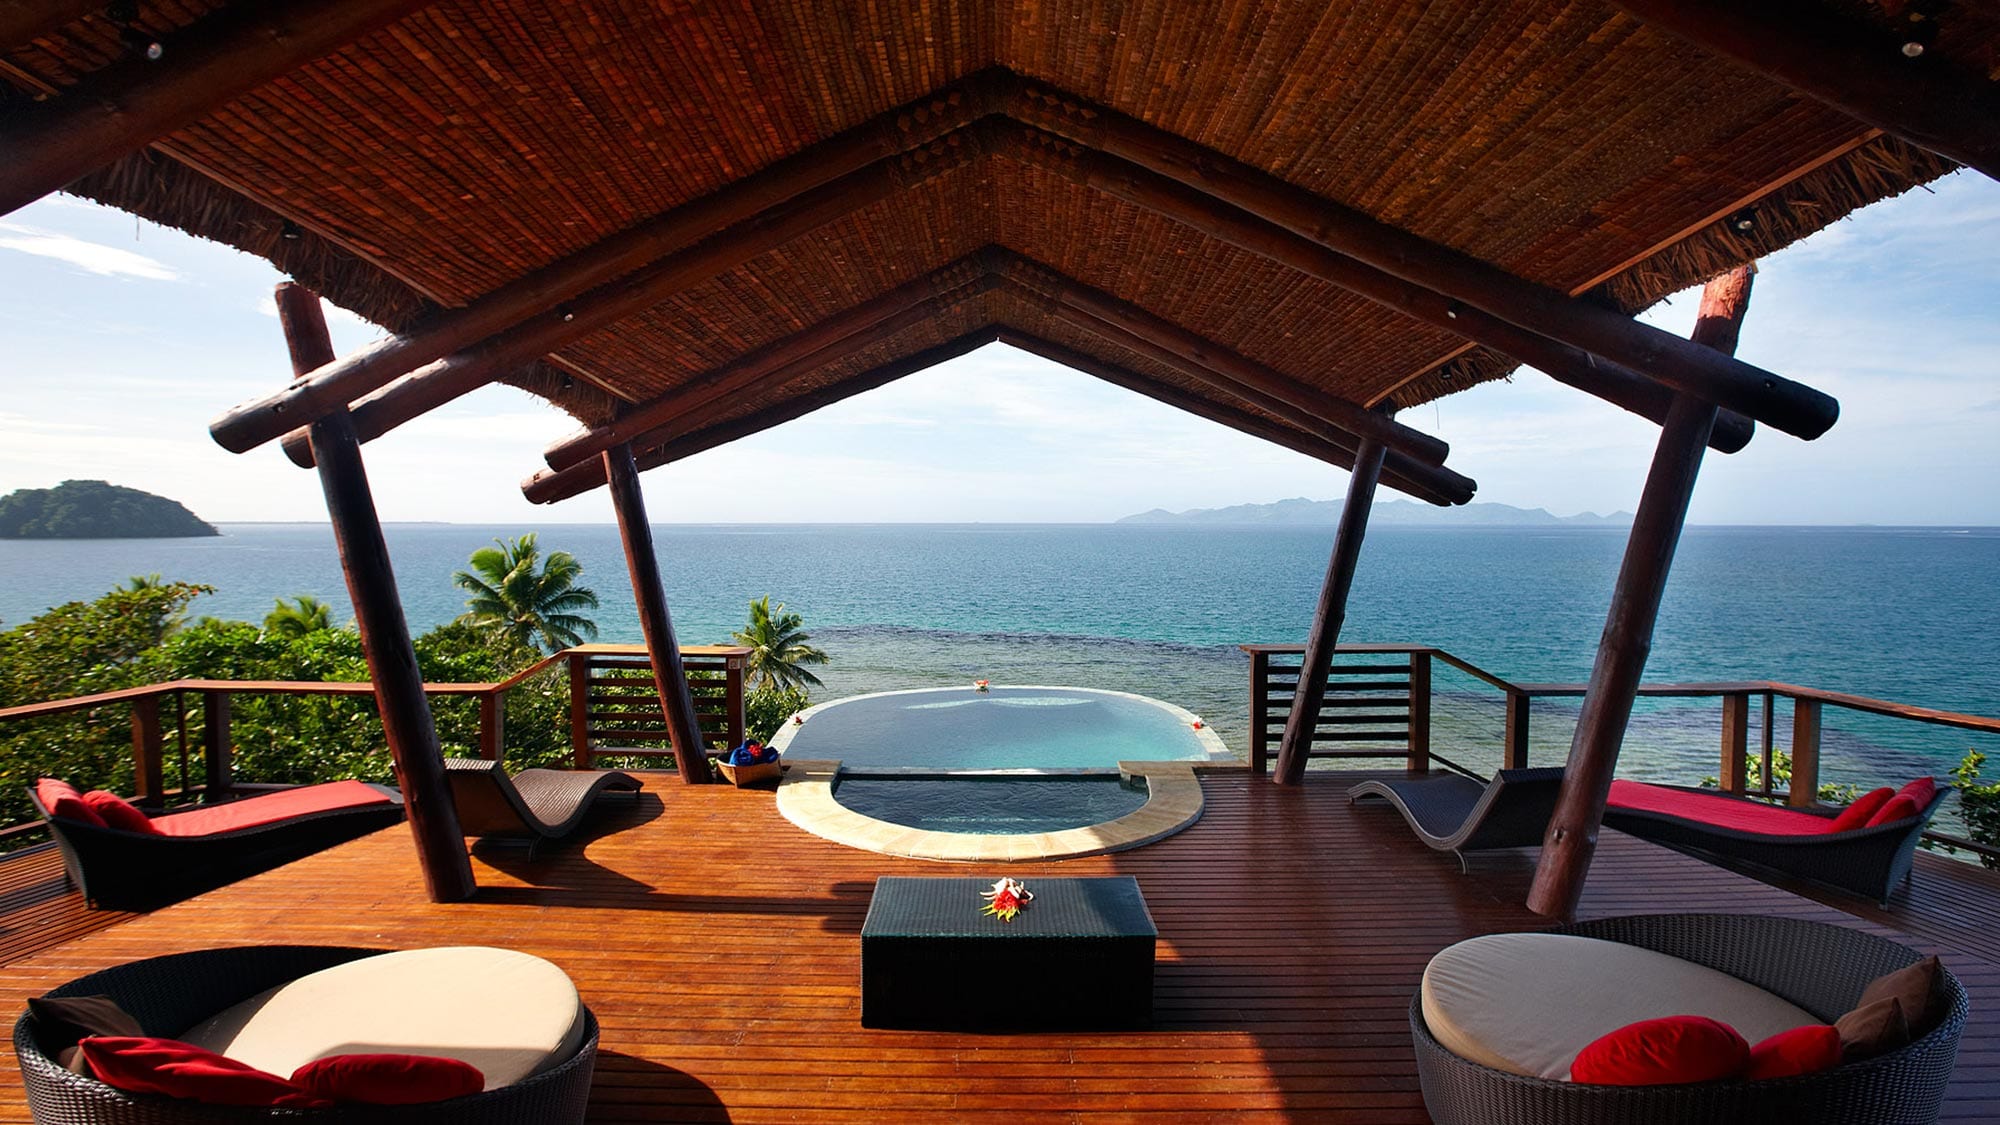 Private pool overlooking ocean